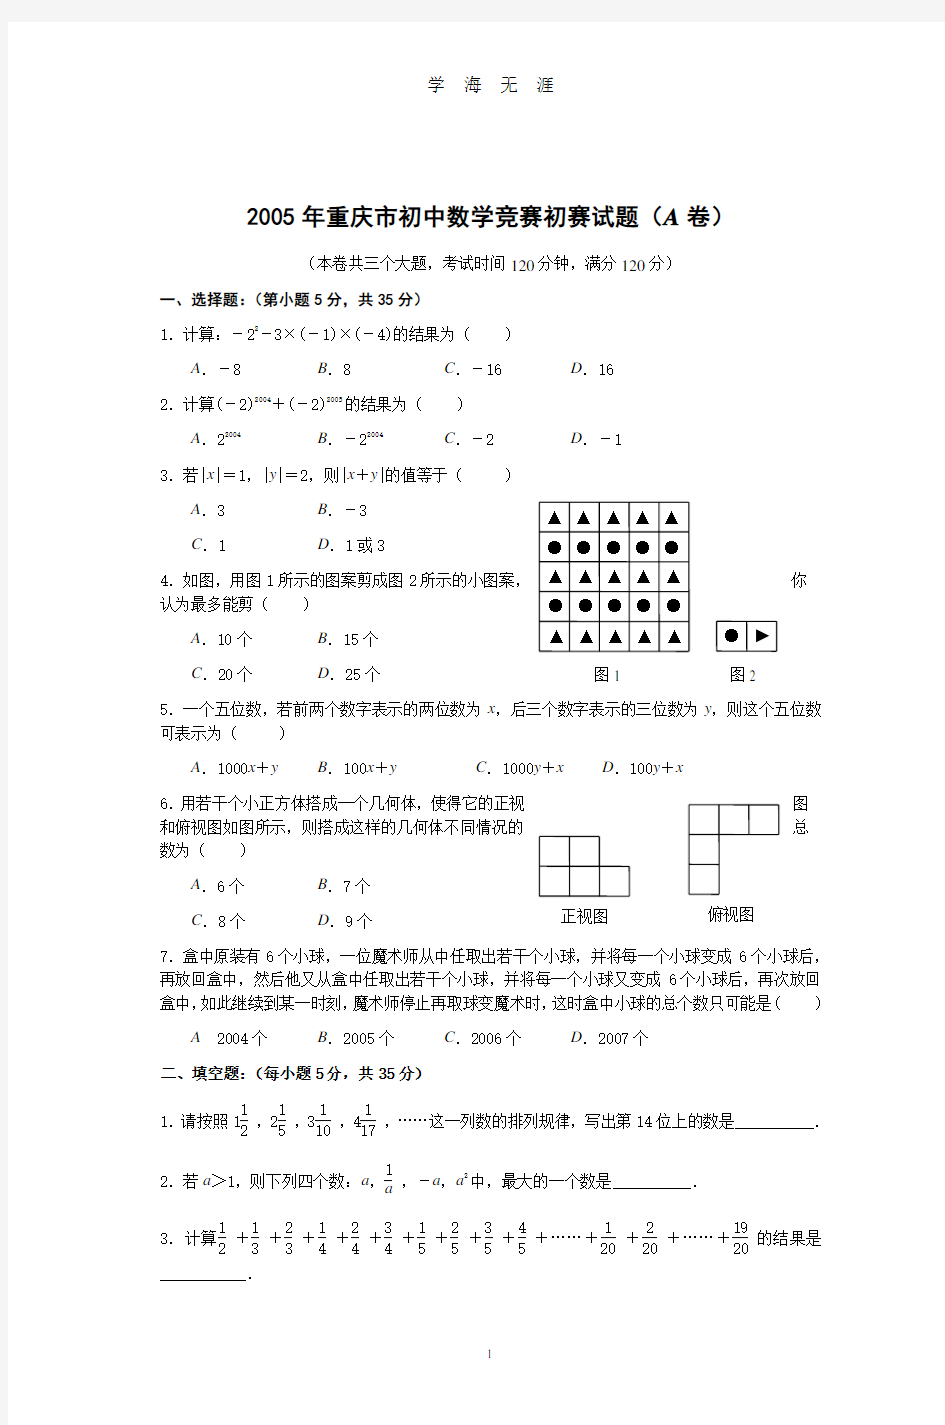 重庆市初中数学竞赛初赛试题(A卷)(2020年8月整理).pdf